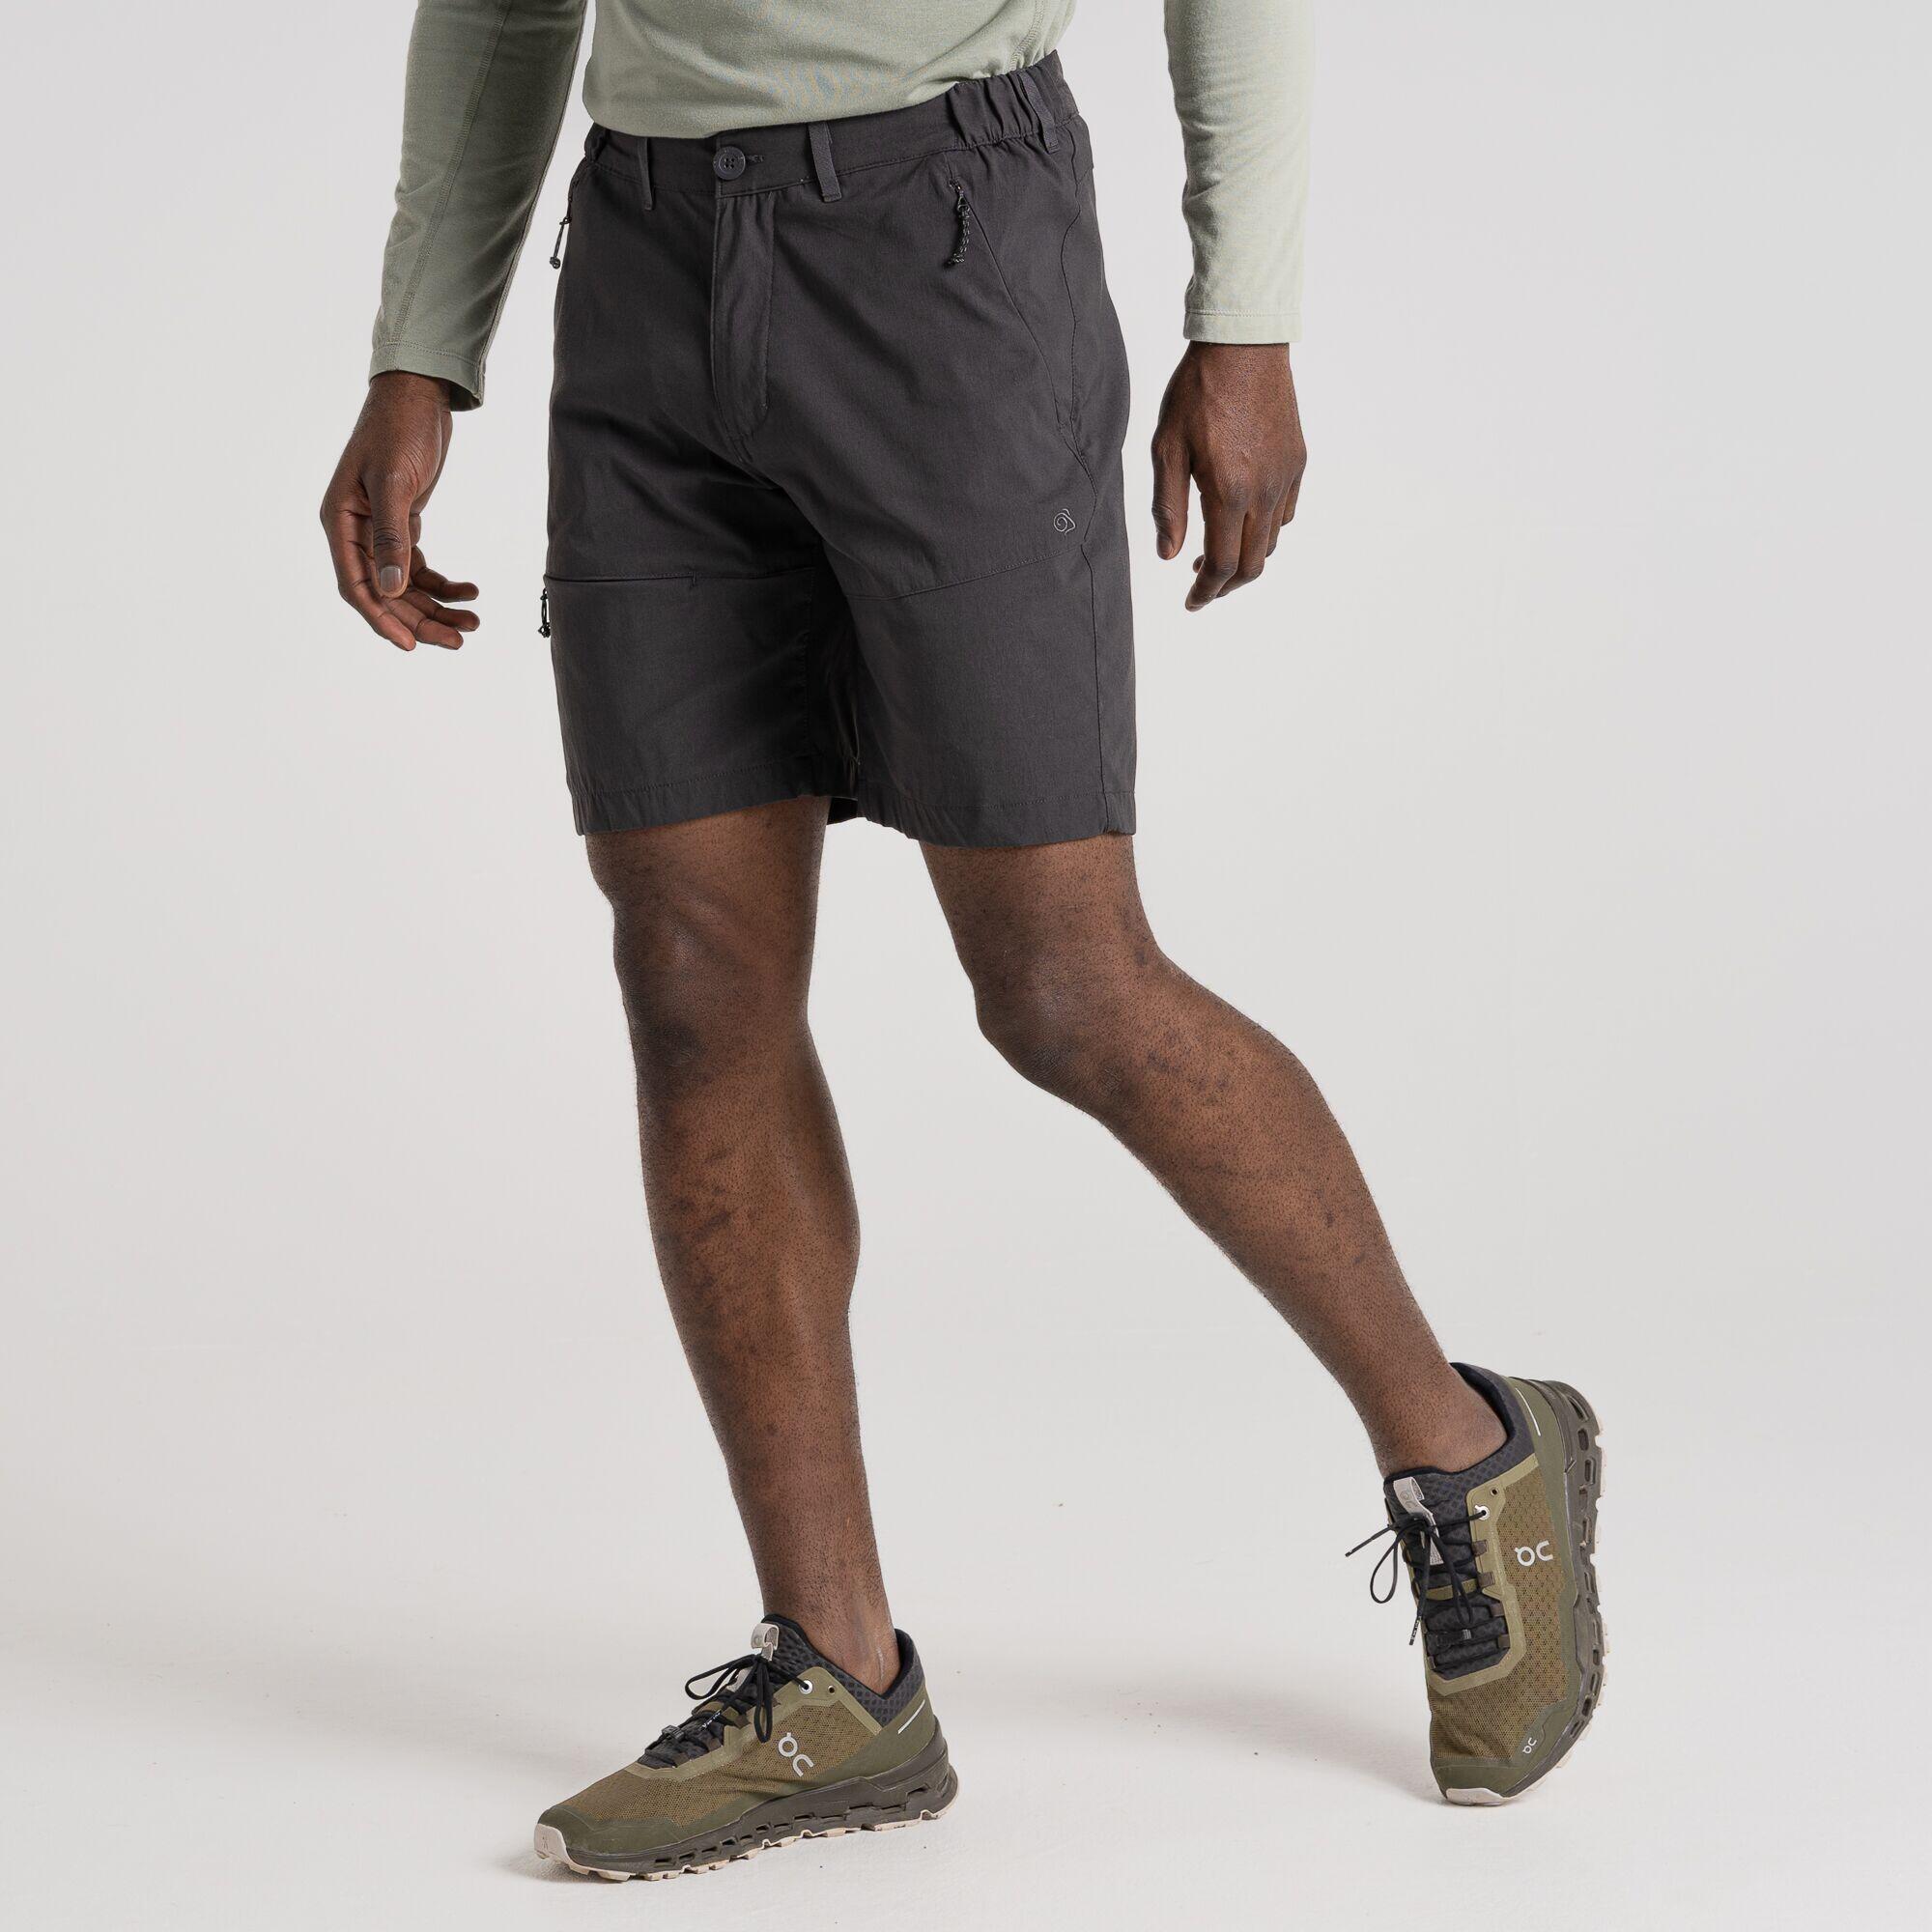 Men's Kiwi Pro Shorts 5/5